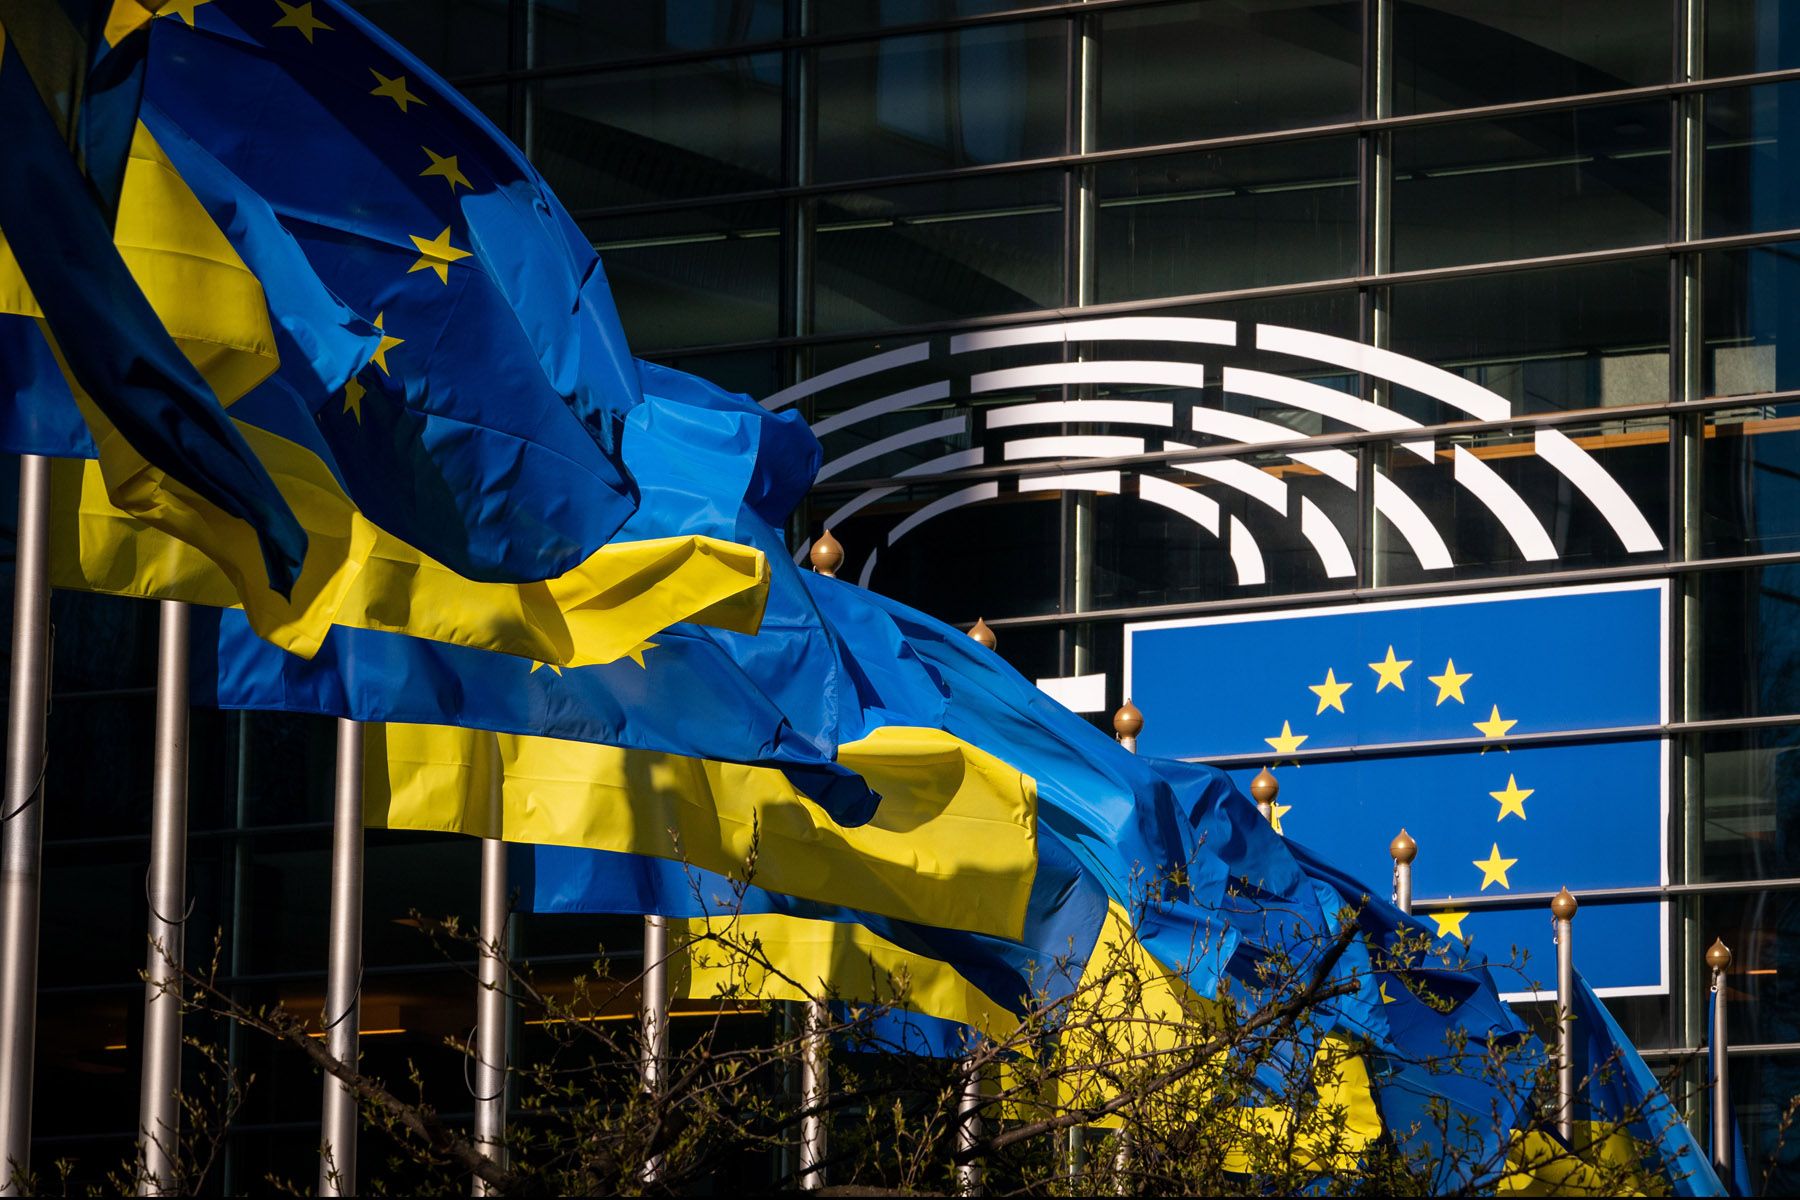 Banderas ucrania y Europa